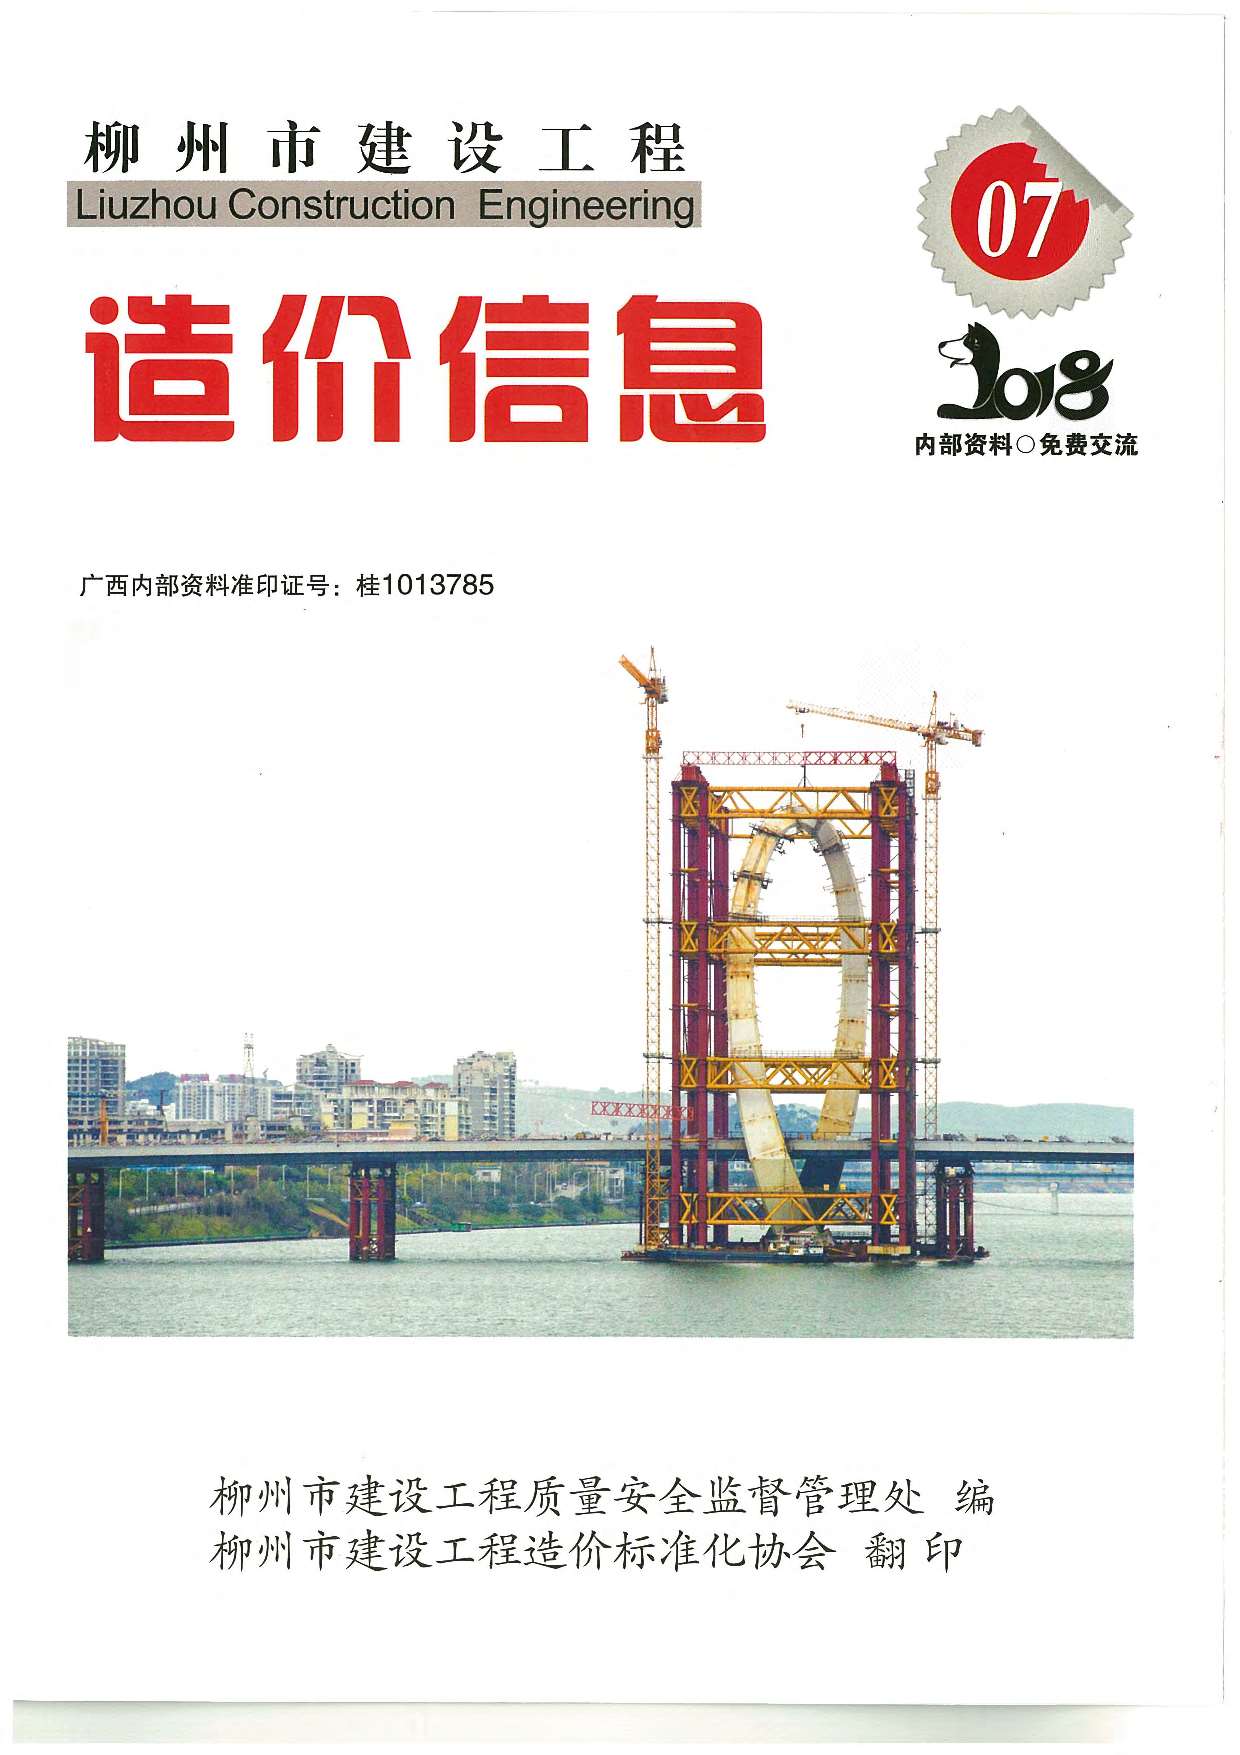 柳州市2018年7月建设工程造价信息